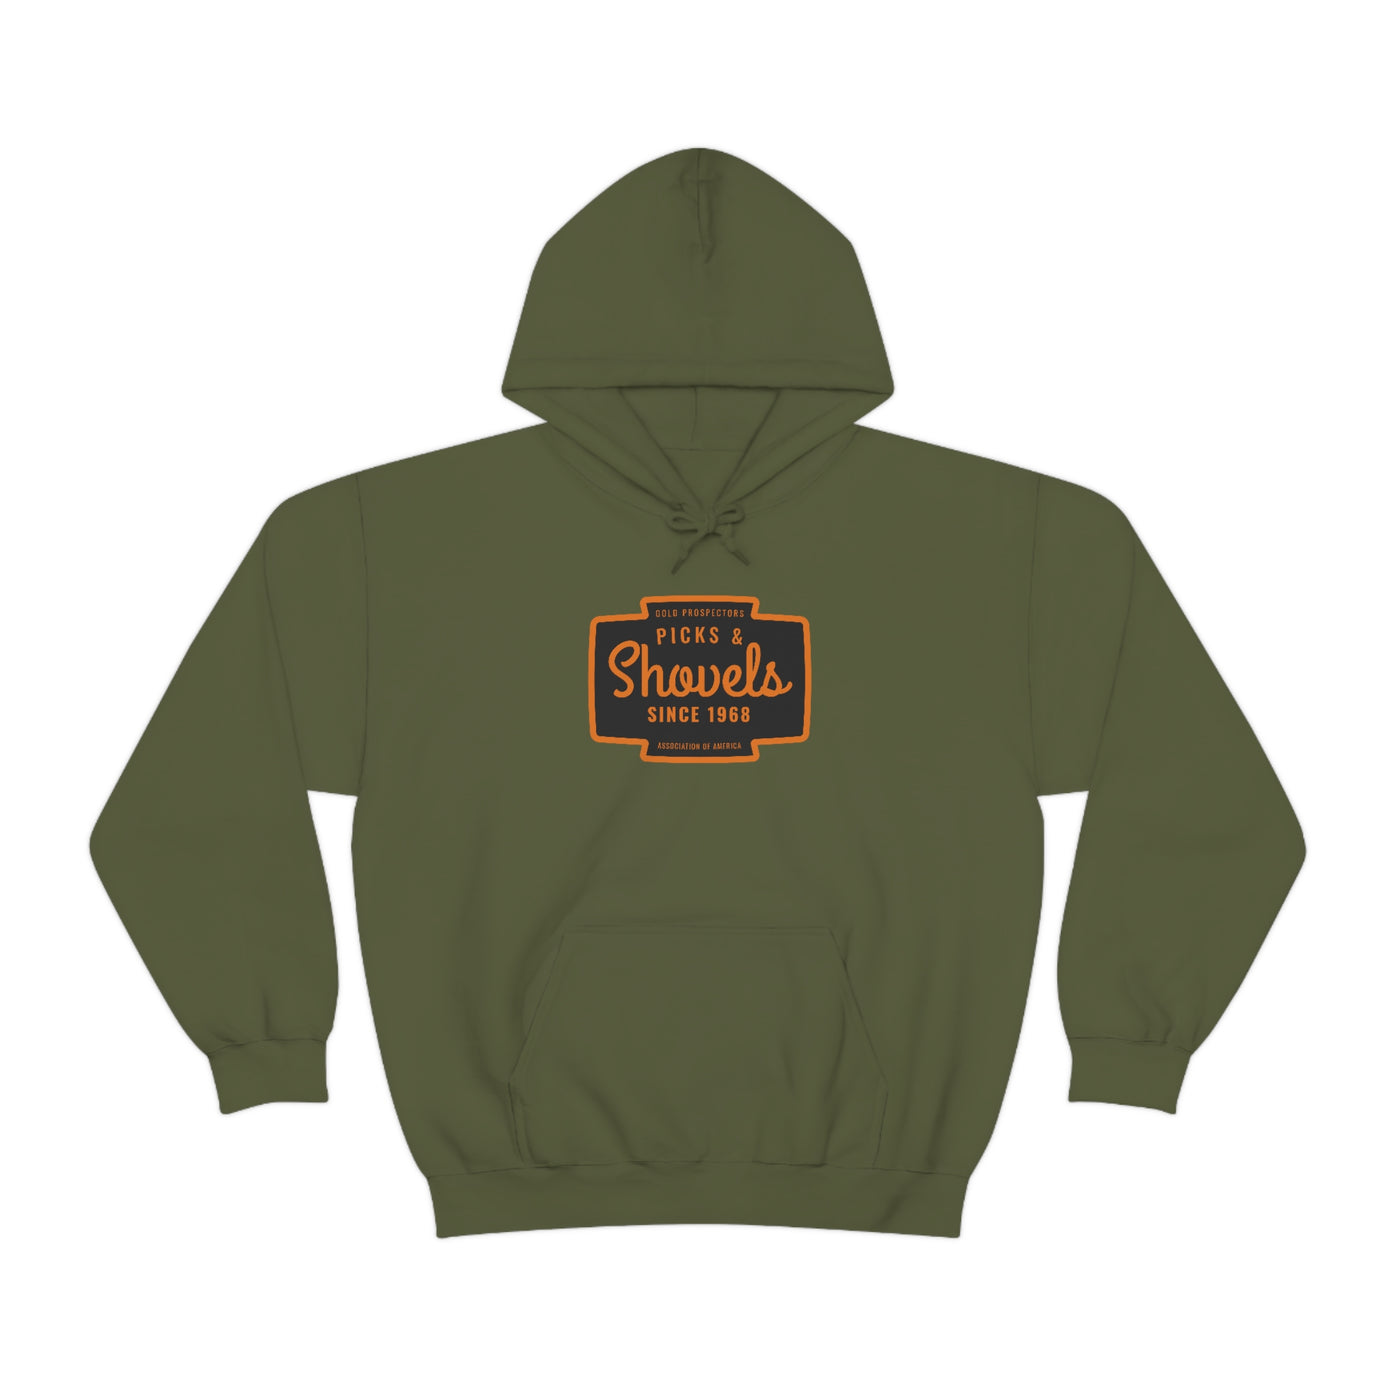 Picks & Shovels - GPAAv2 Hooded Sweatshirt